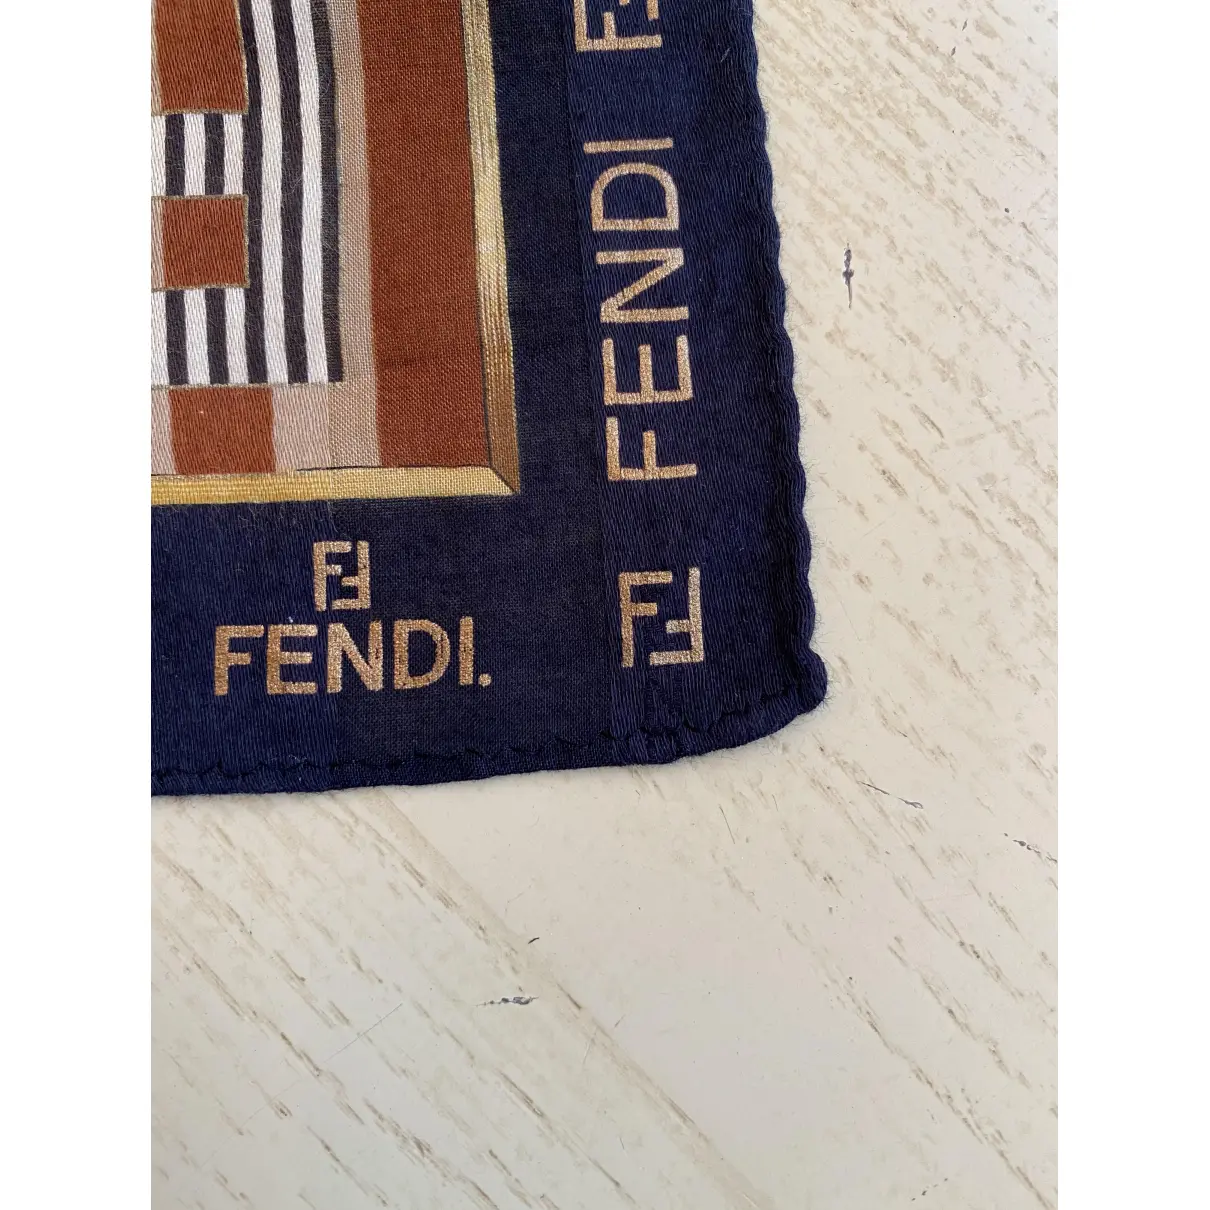 Buy Fendi Scarf online - Vintage